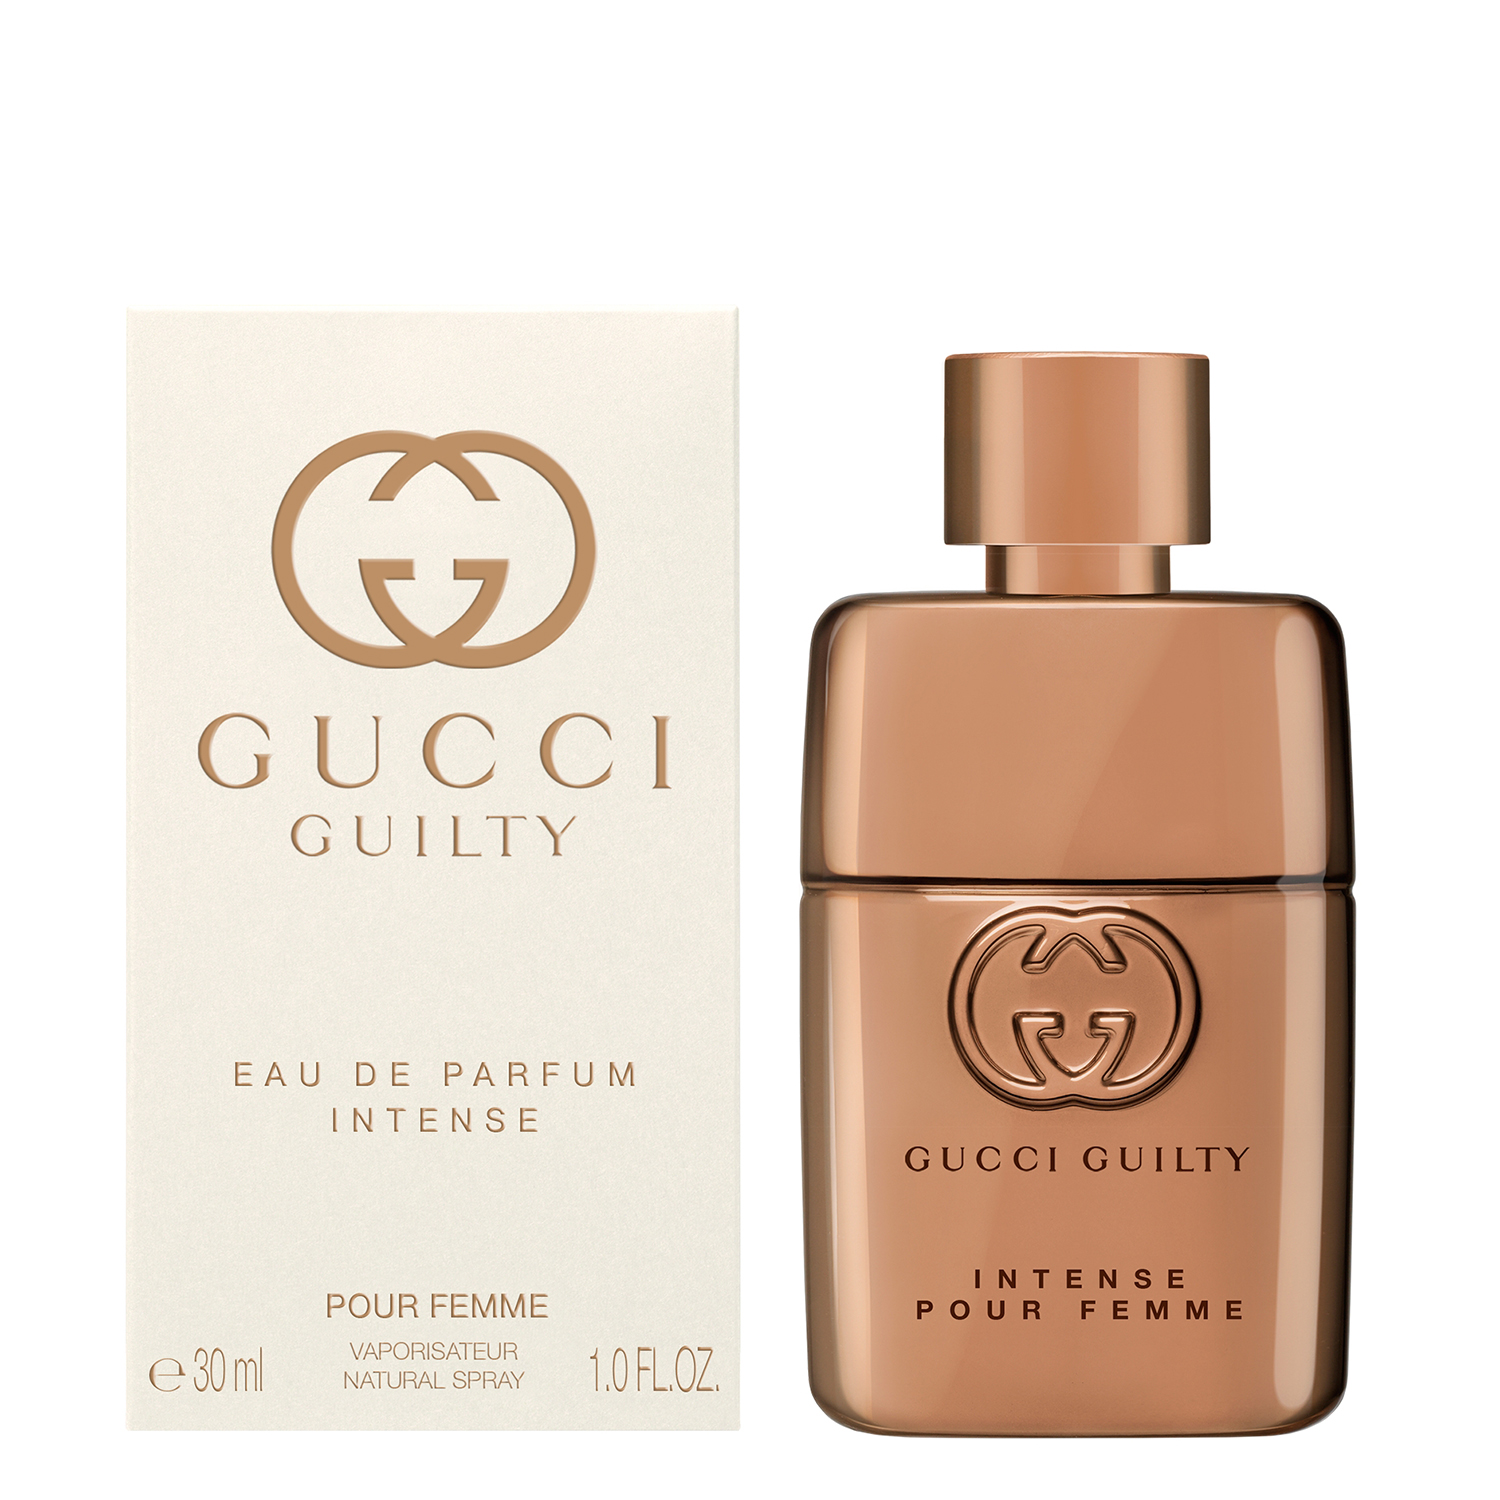 Gucci Guilty Intense Pour Femme Eau de Parfum 50ml